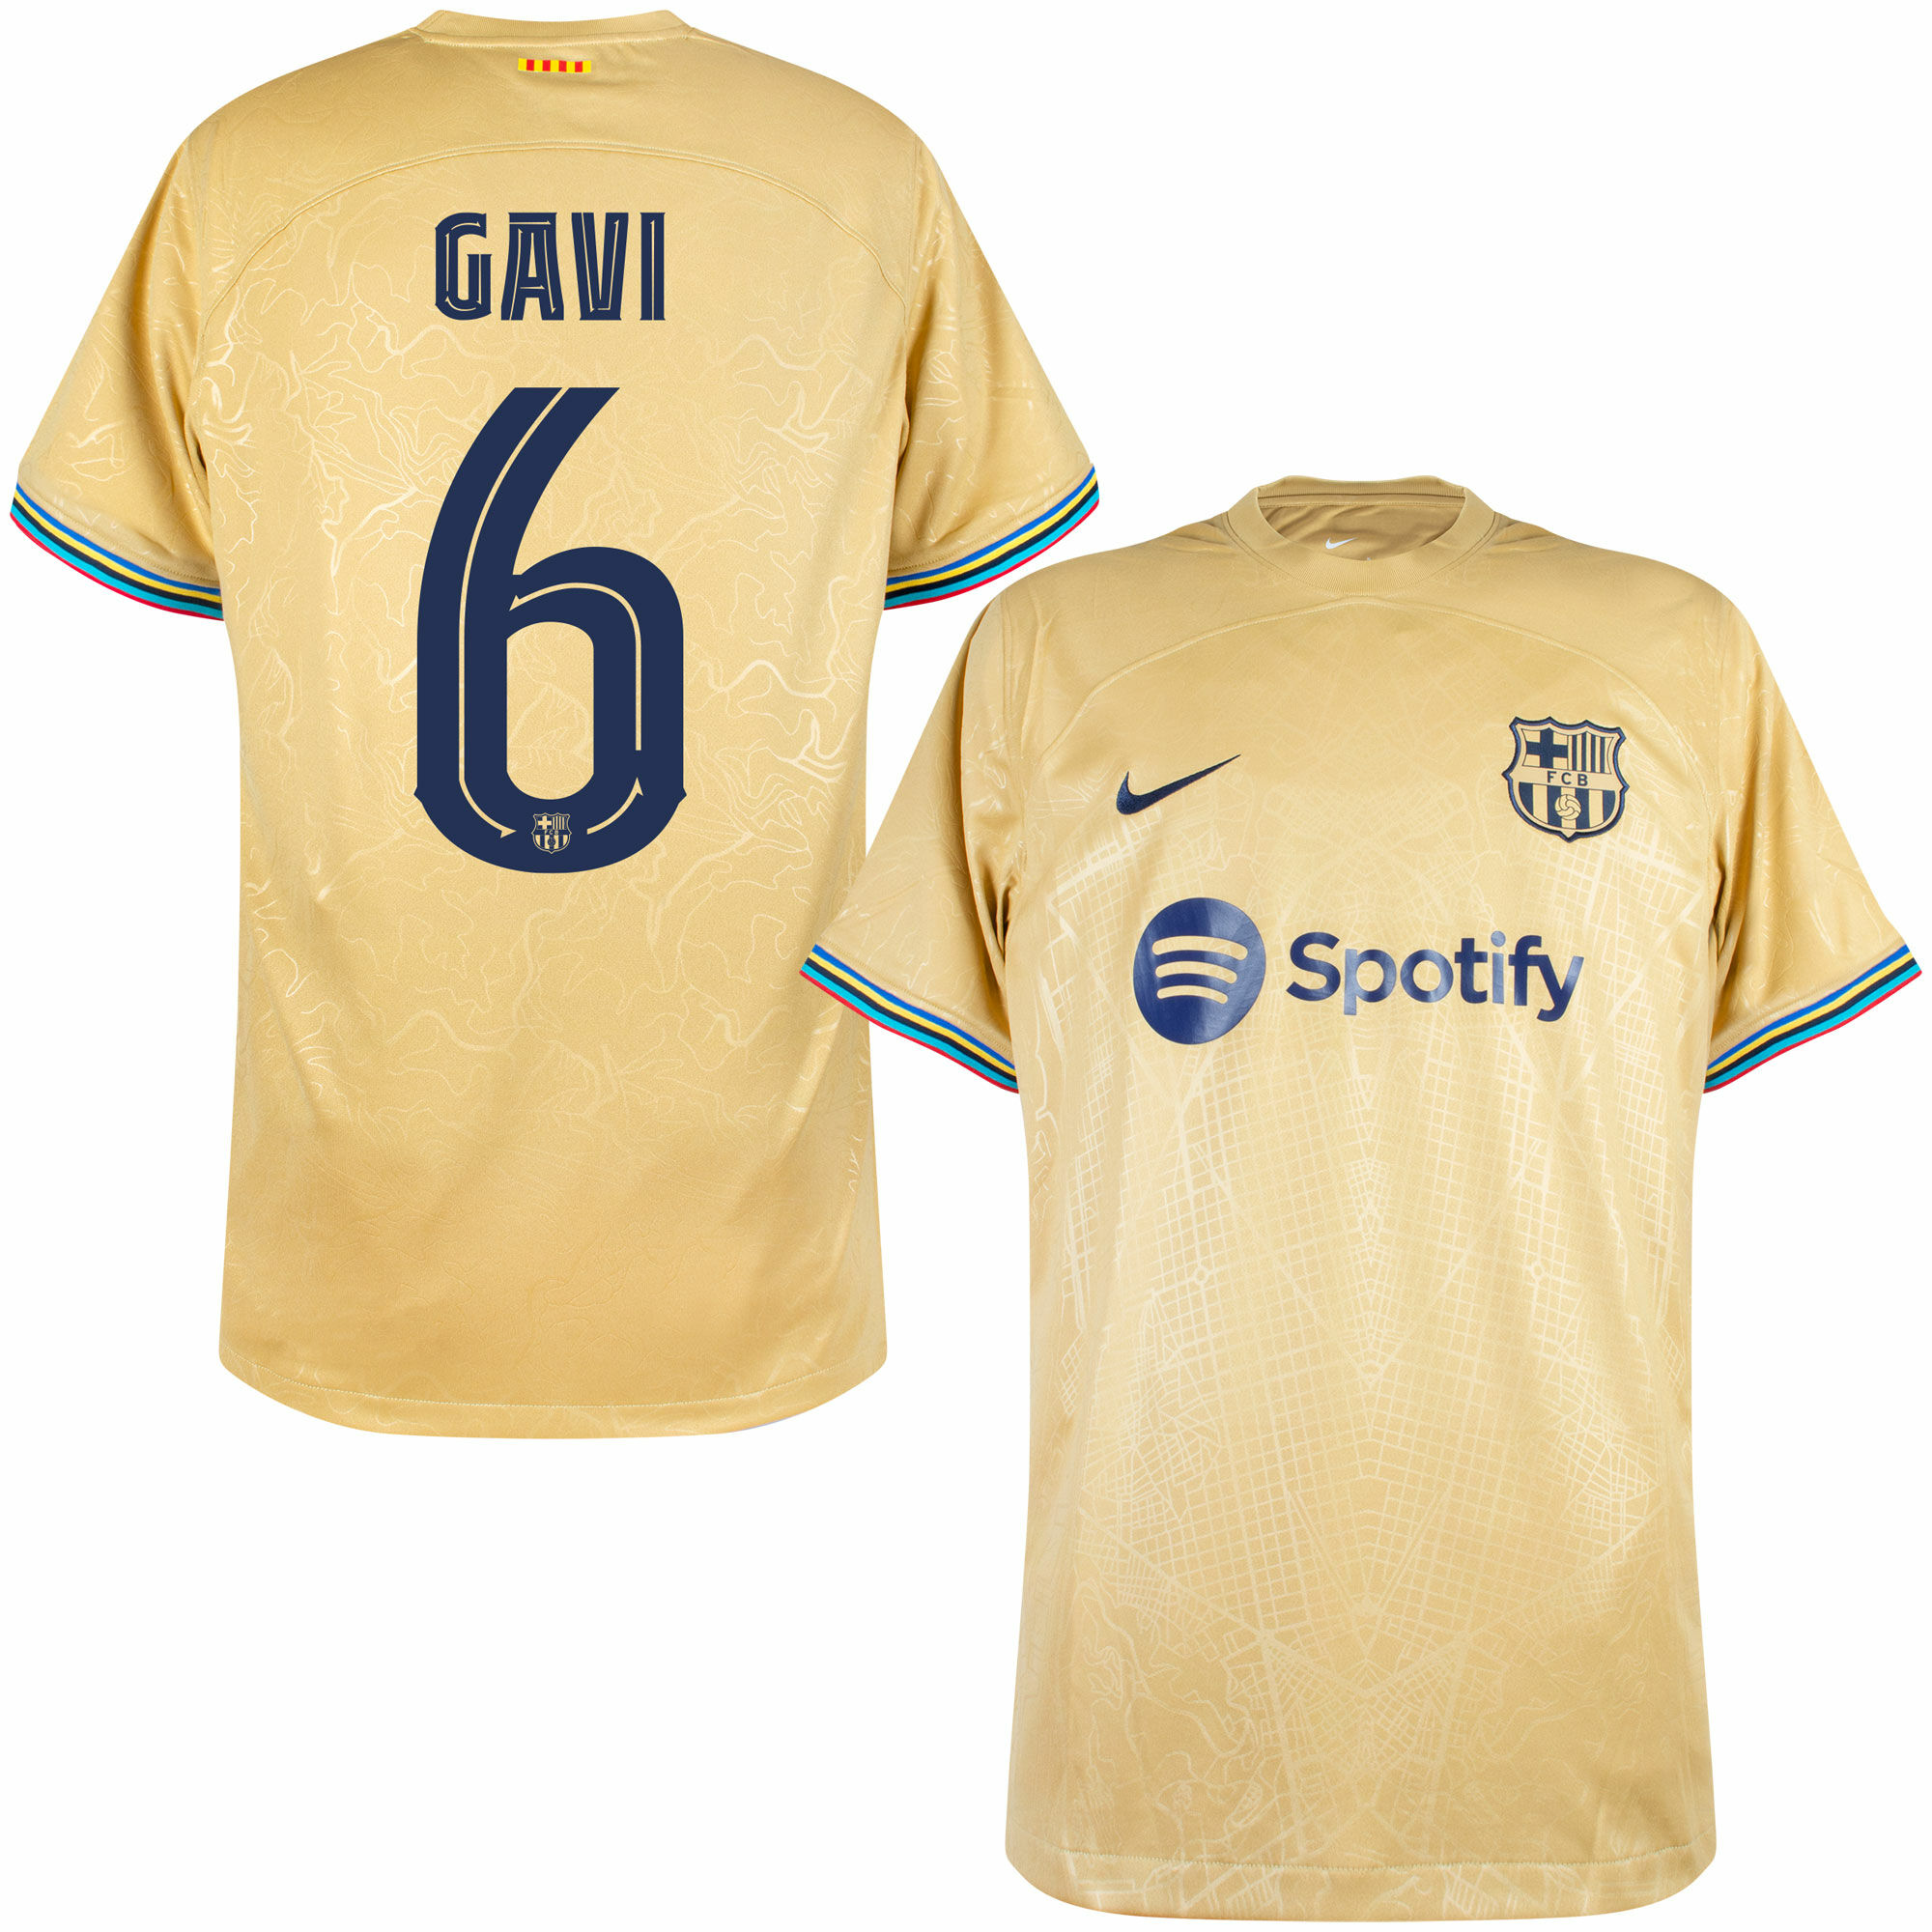 Barcelona - Dres fotbalový - oficiální potisk, žlutý, Gavi, číslo 6, sezóna 2022/23, venkovní